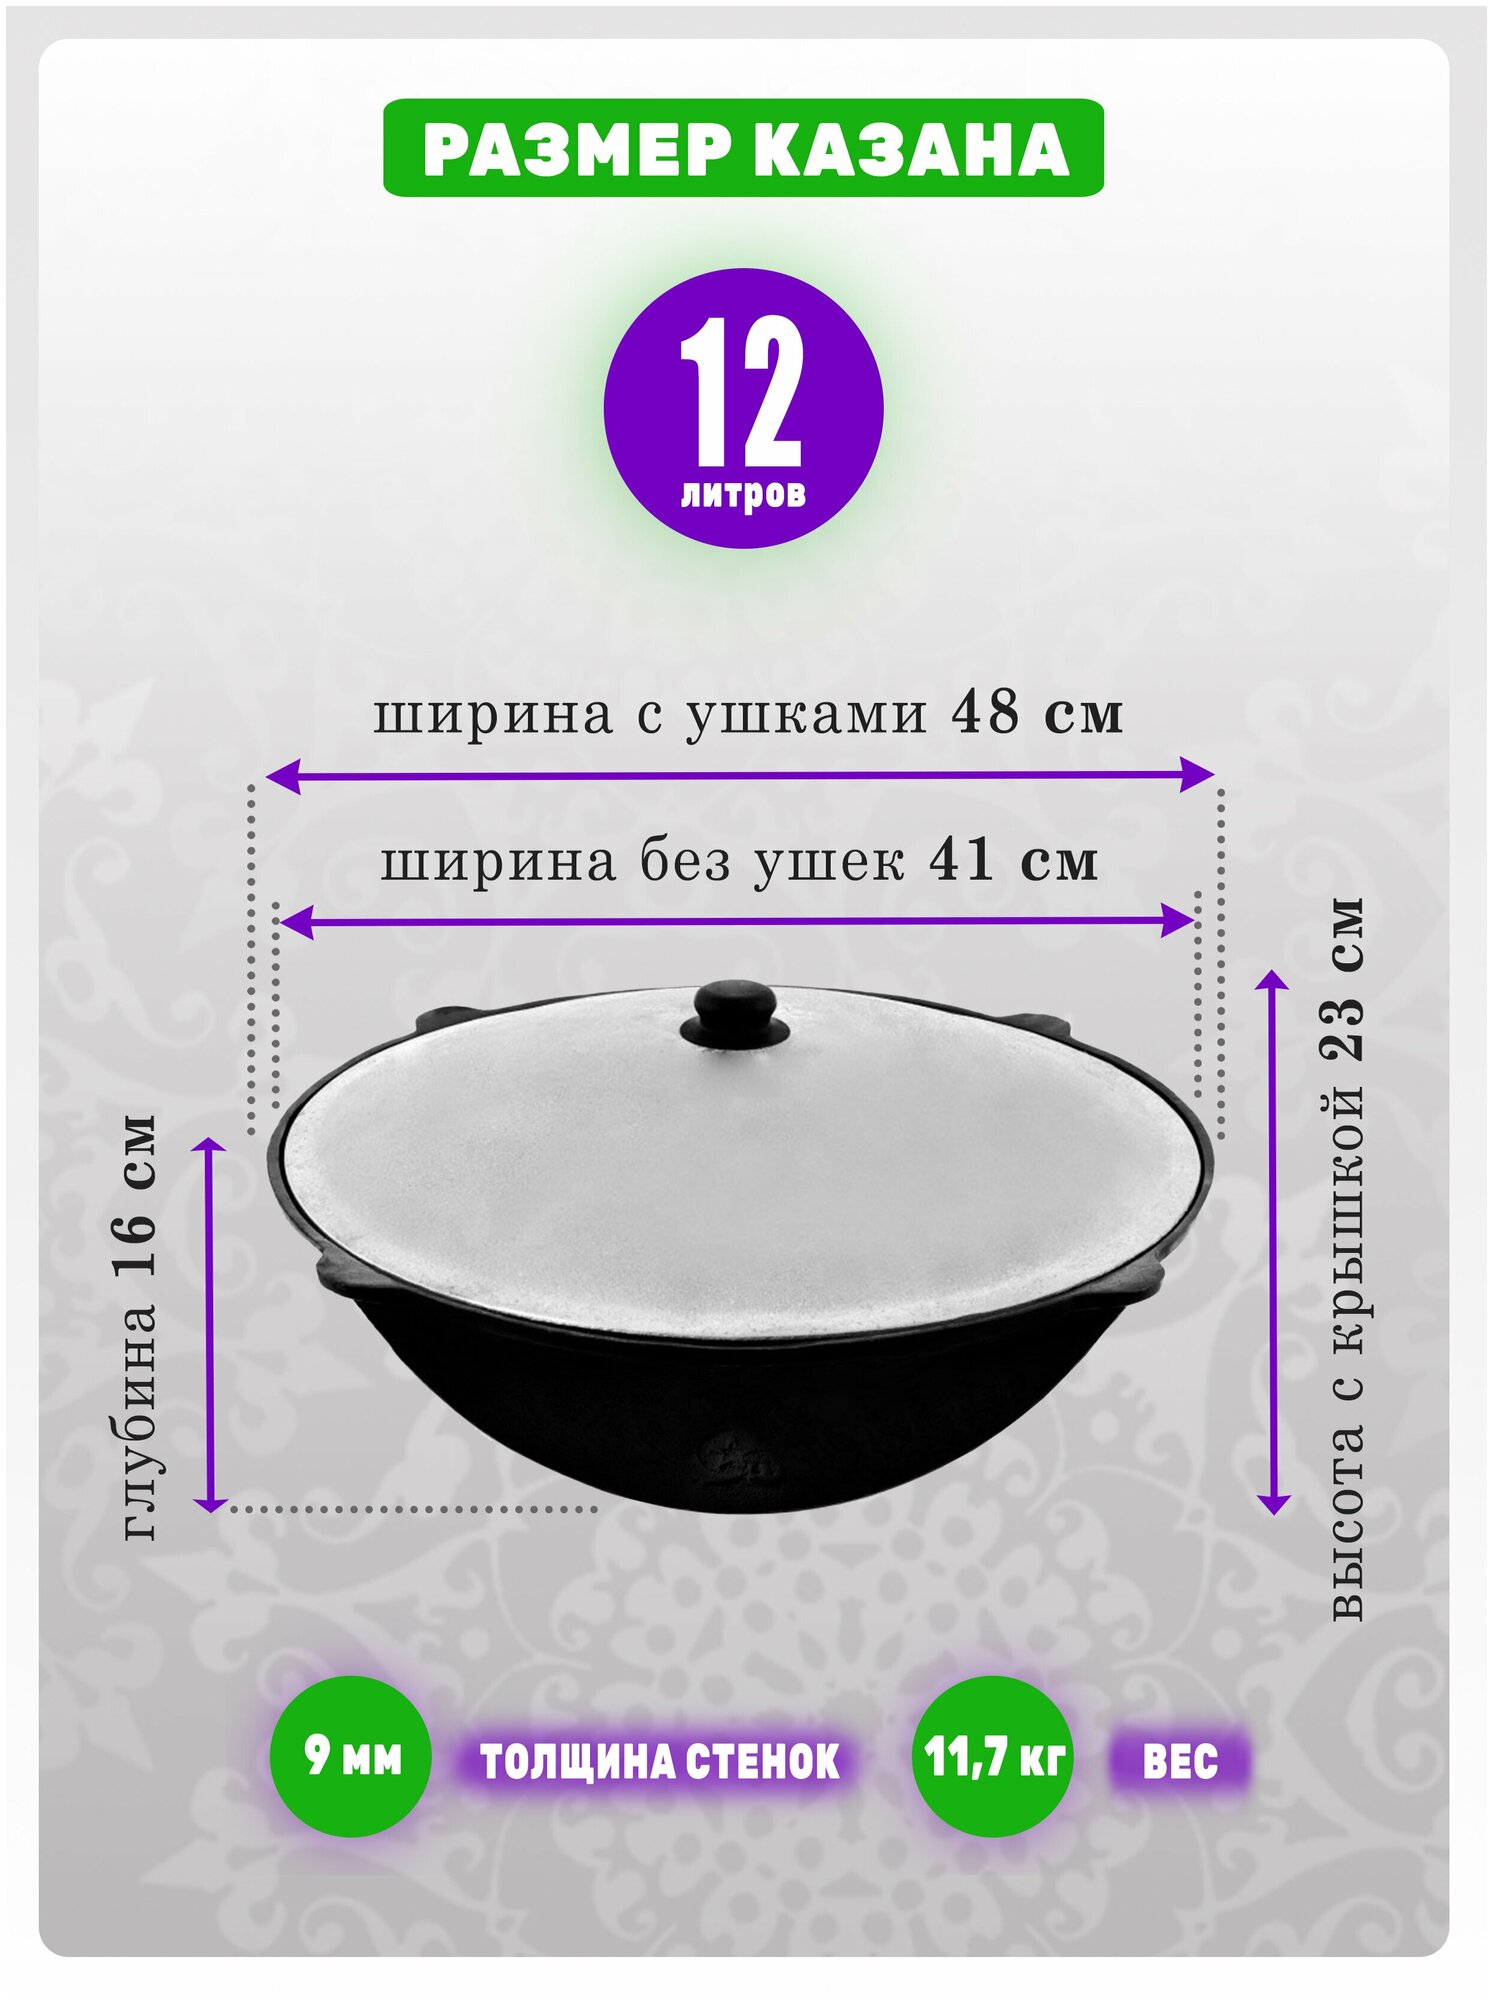 Комплект: Печь с трубой для казана и казан узбекский, чугунный, 12 литров, с круглым дном, обожженный, шлифованный, крышка алюминий. - фотография № 3